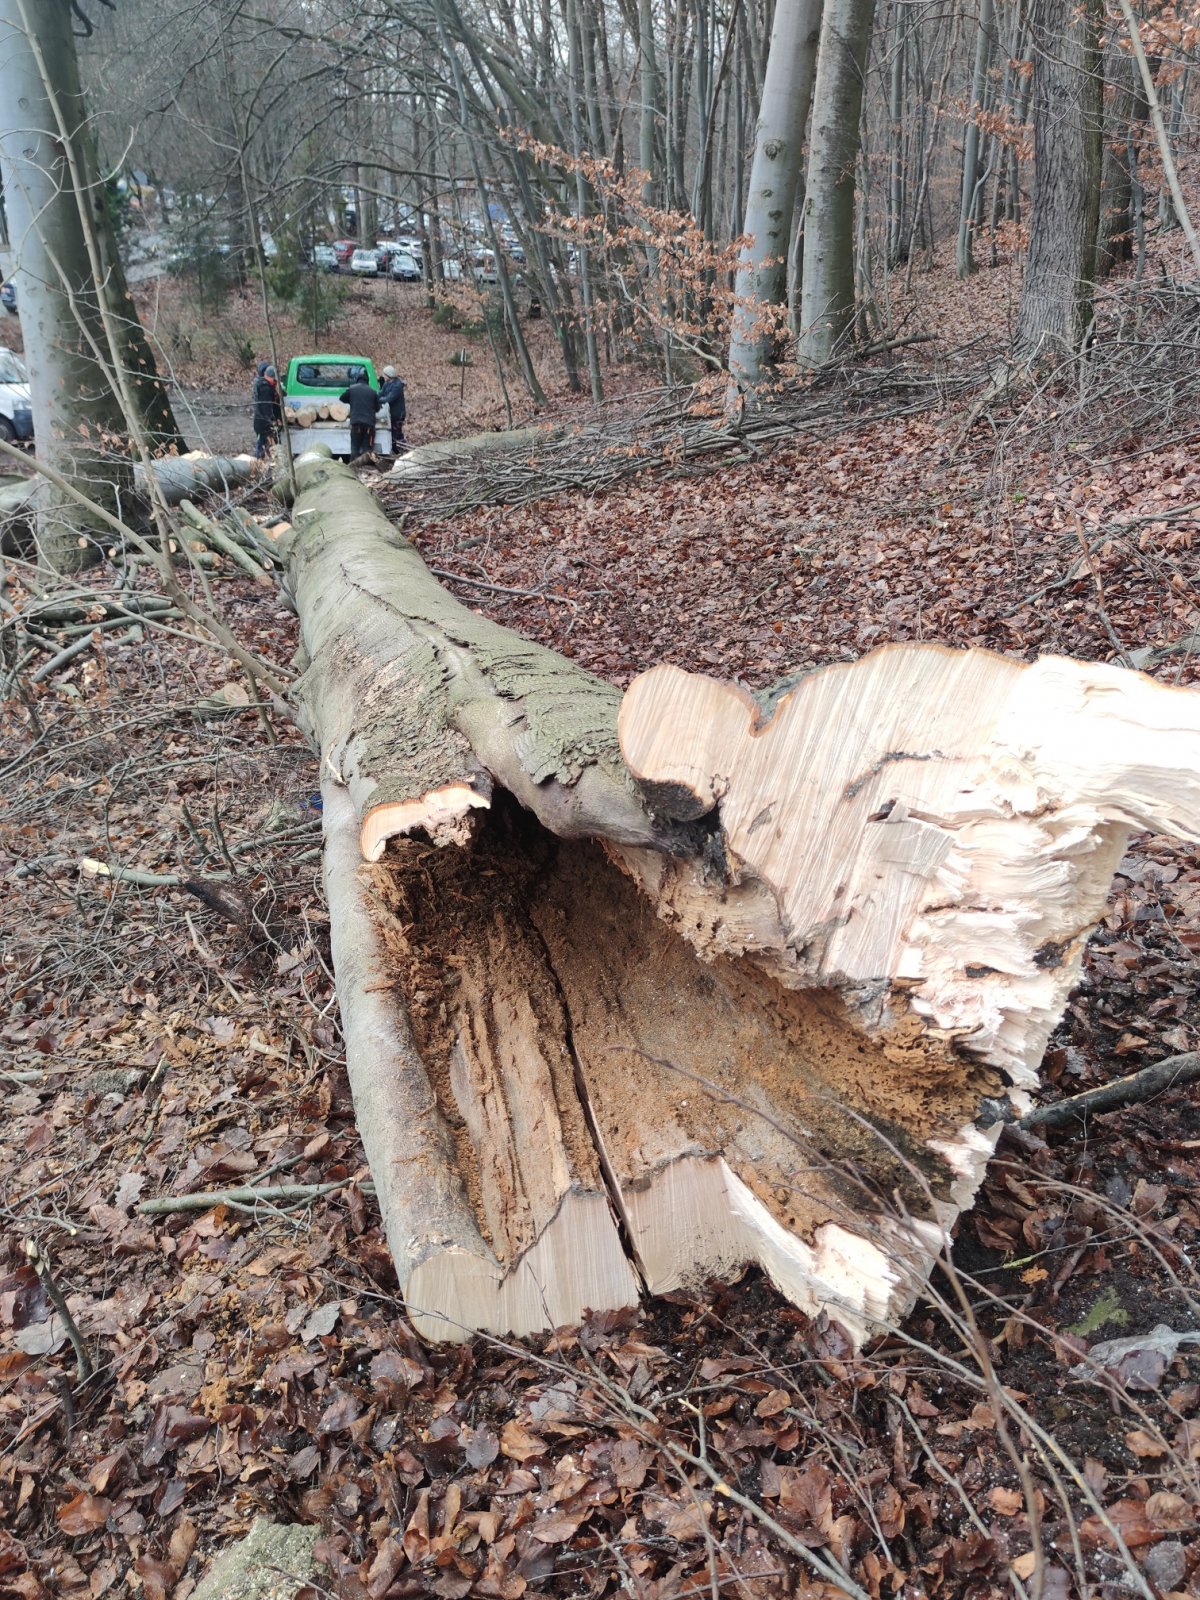 Tak wyglądały buki przy Witomińskiej, które pilnie trzeba było usunąć w styczniu tego roku - wkrótce zastąpią je nowe nasadzenia drzew,, które będą rosły przez kolejnych kilkadziesiąt lat bez zagrożenia bezpieczeństwa,  fot. Wydział Ogrodnika Miasta